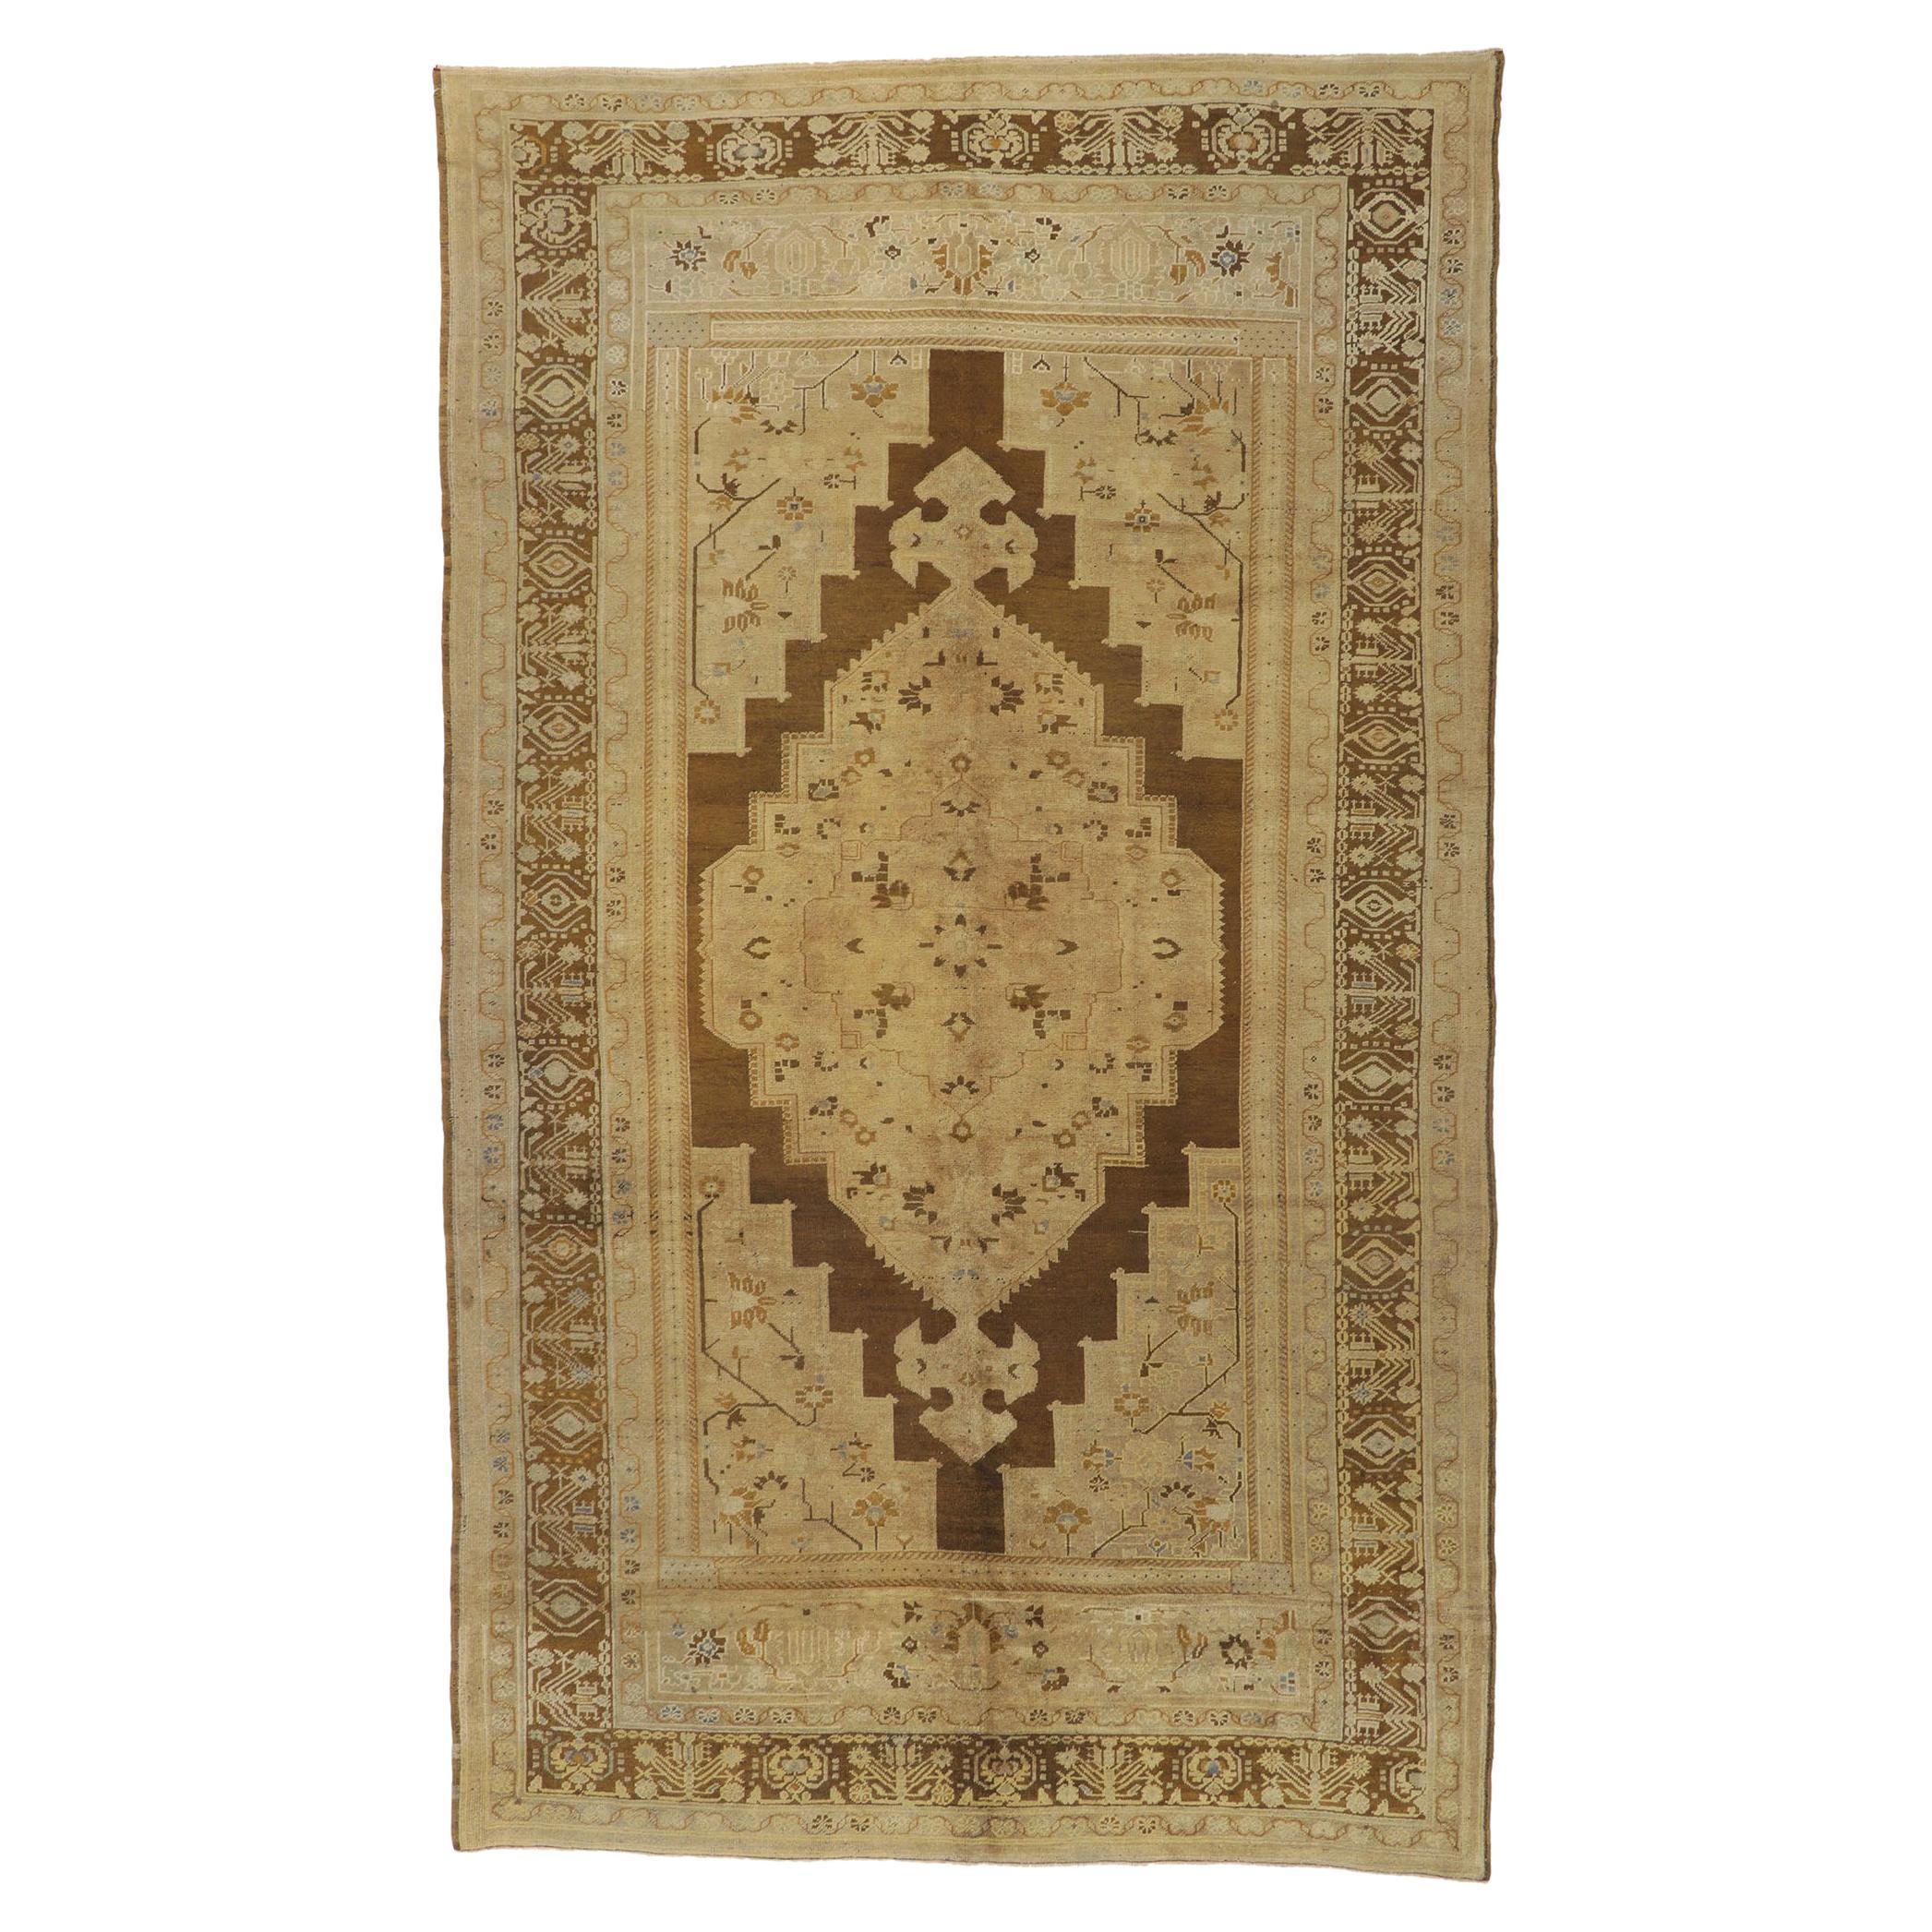 Türkischer Oushak-Teppich im Vintage-Stil in warmen Erdtönen